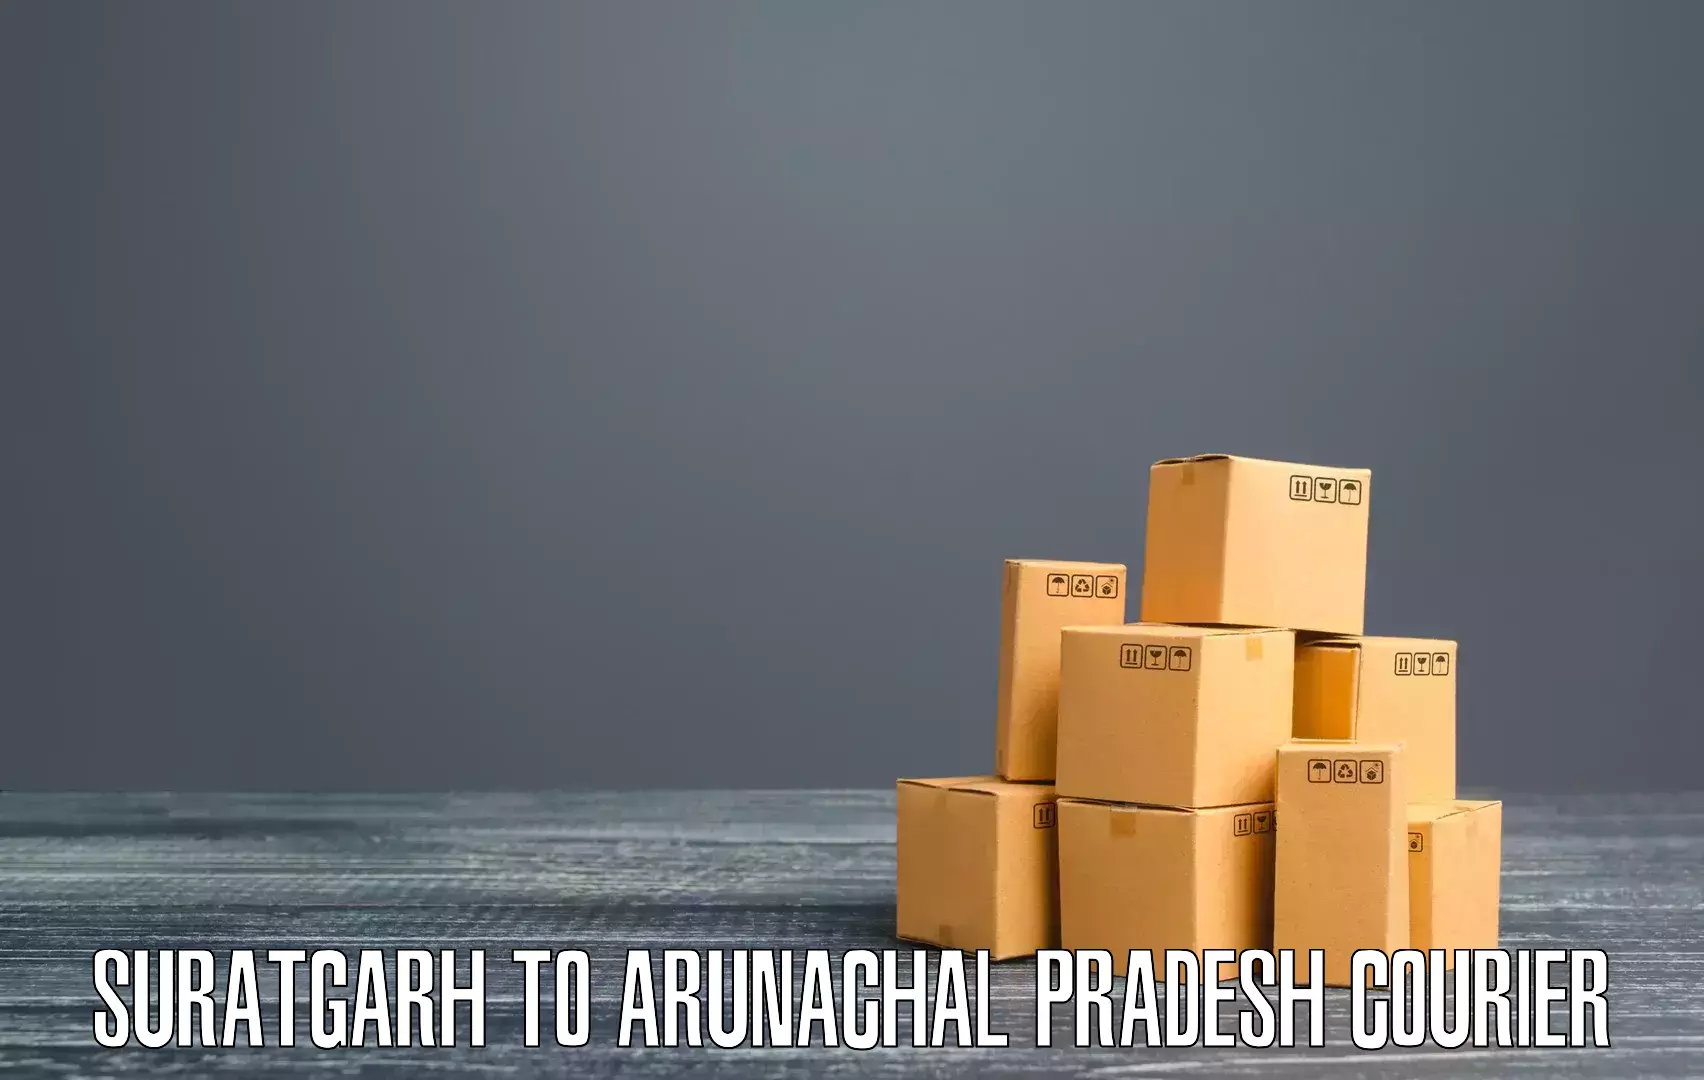 Customer-oriented courier services Suratgarh to Arunachal Pradesh